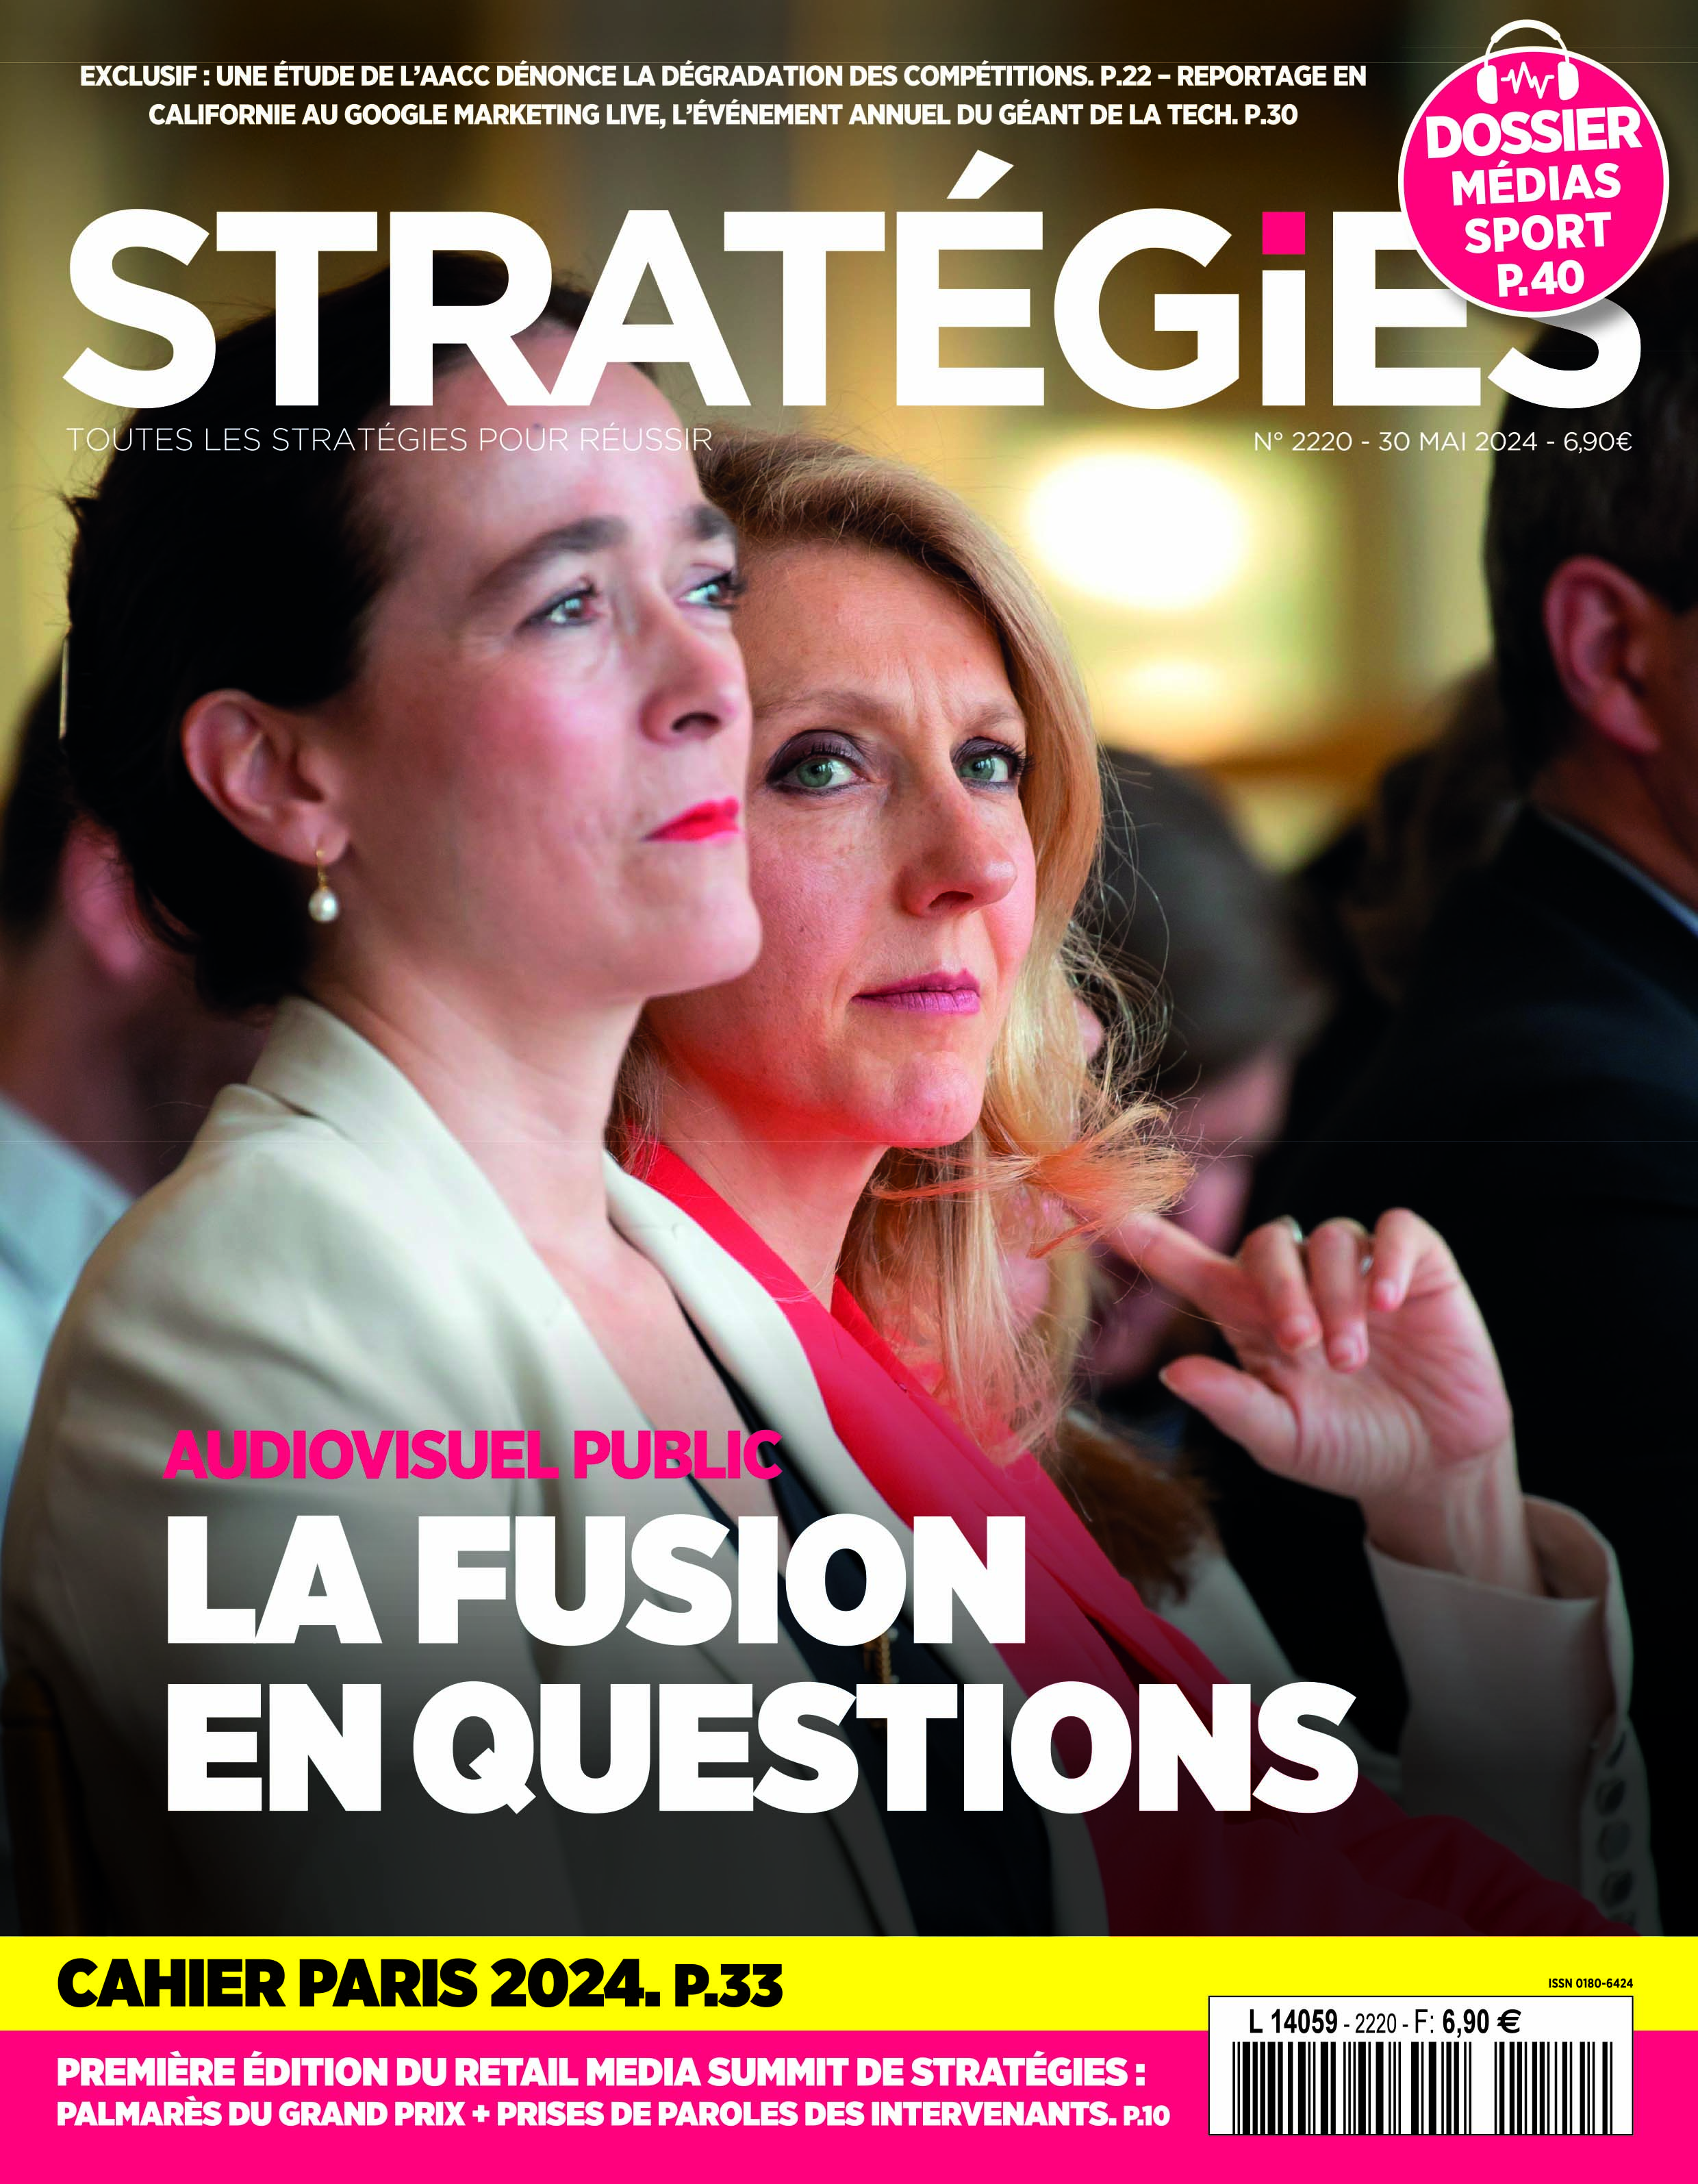 Couverture du magazine Stratégies n°2220 : "La fusion de l'audiovisuel public en questions"